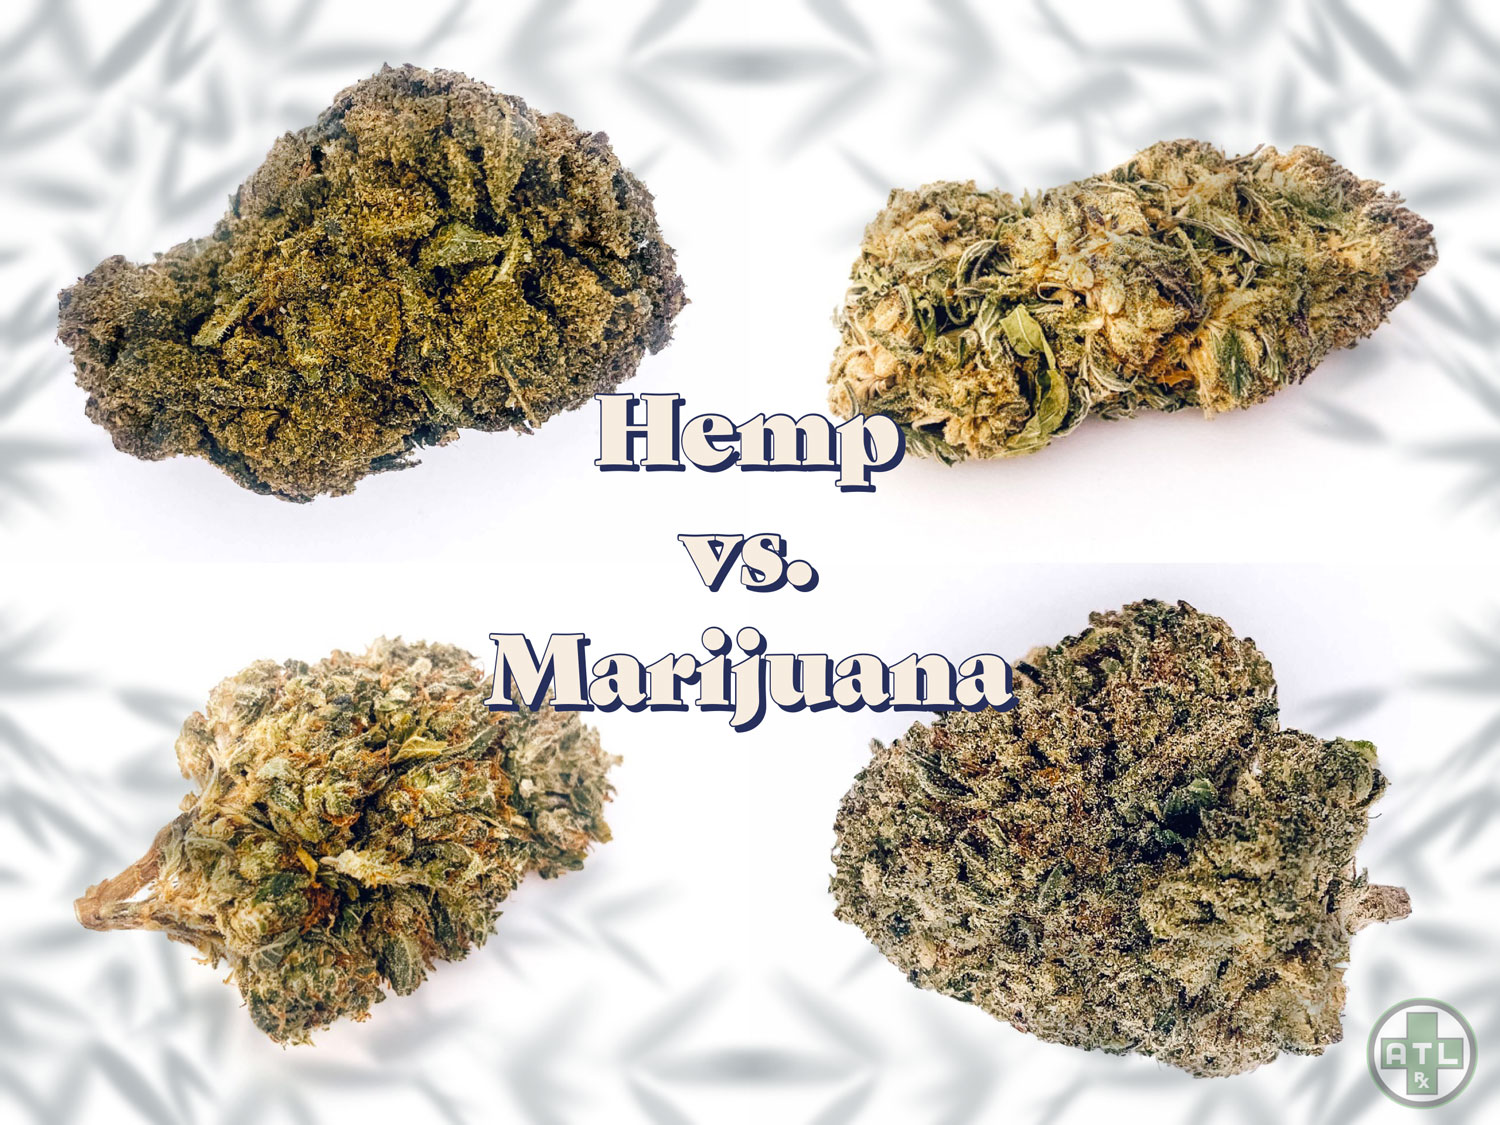 Hemp Vs. Marijuana: What’s the Difference?